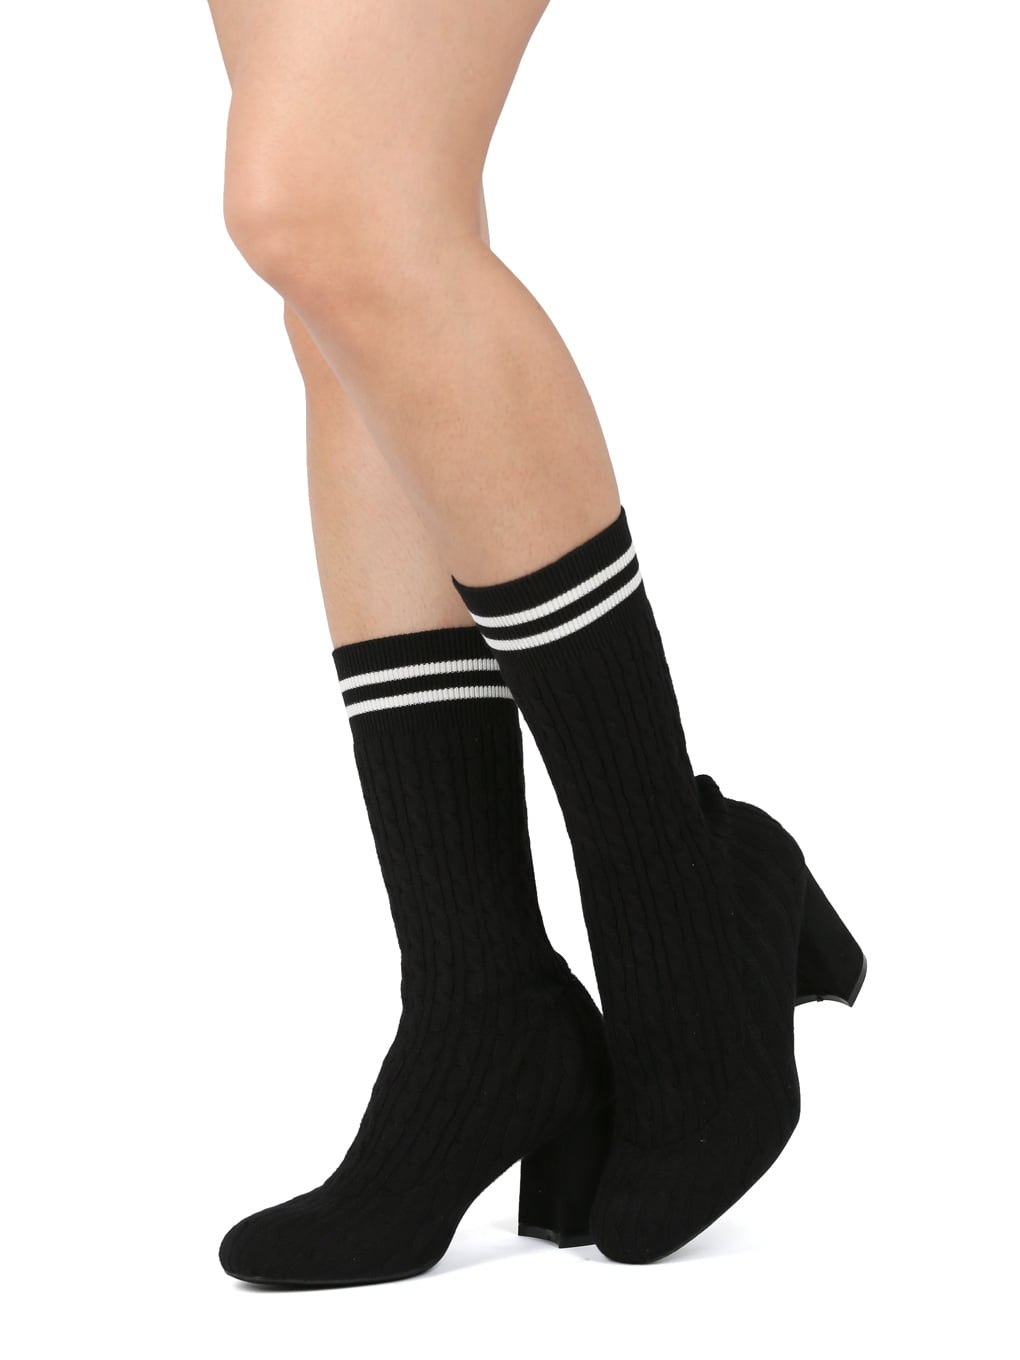 calf high sock boots